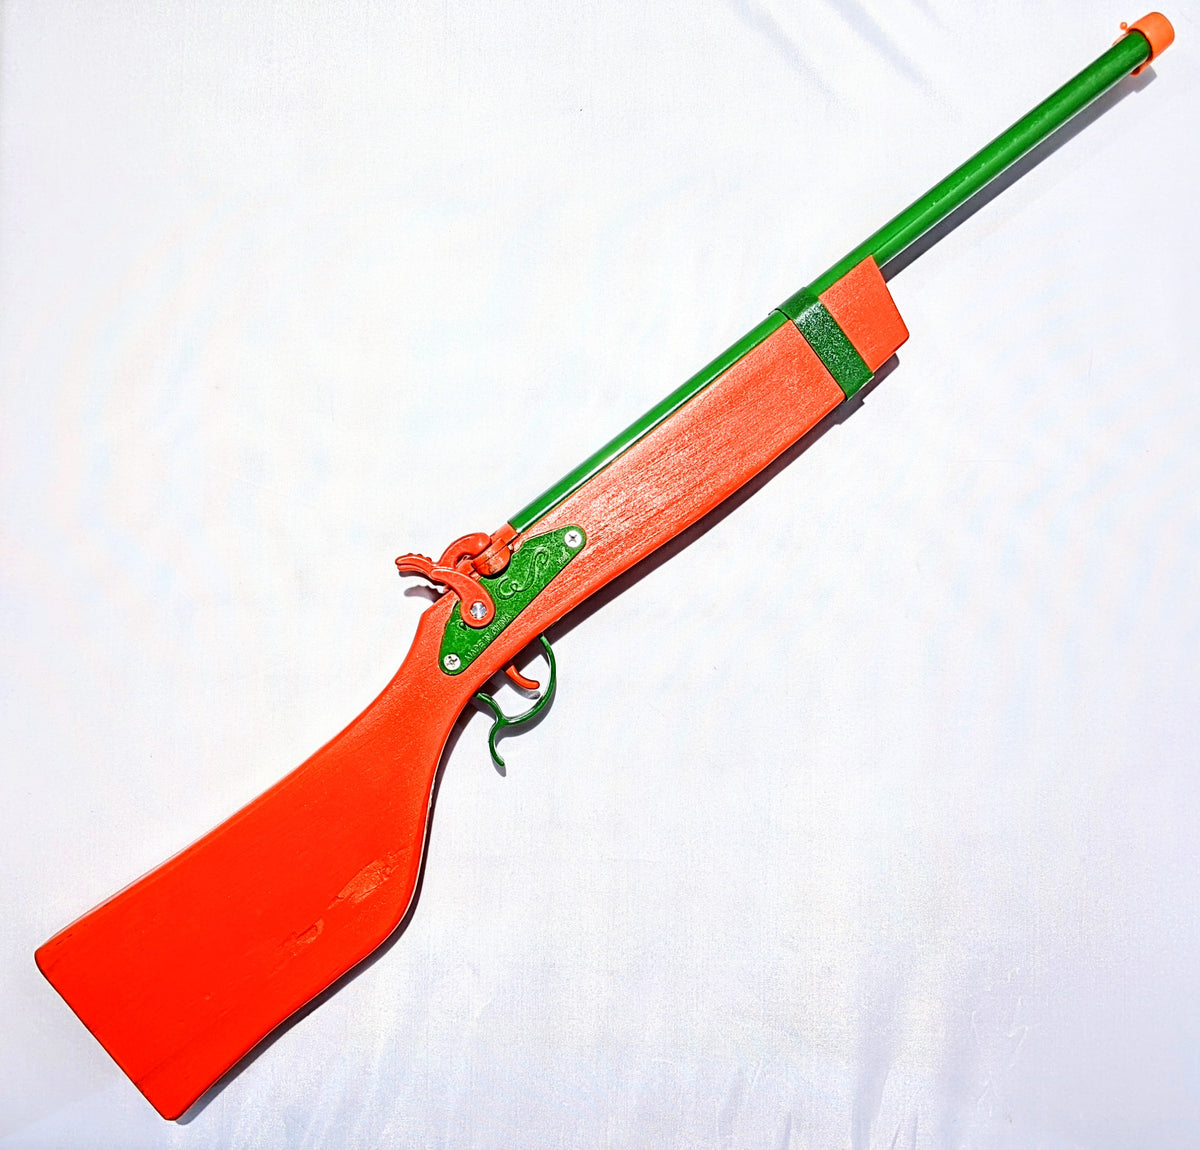 Miniature Double Barrel Toy Shotgun